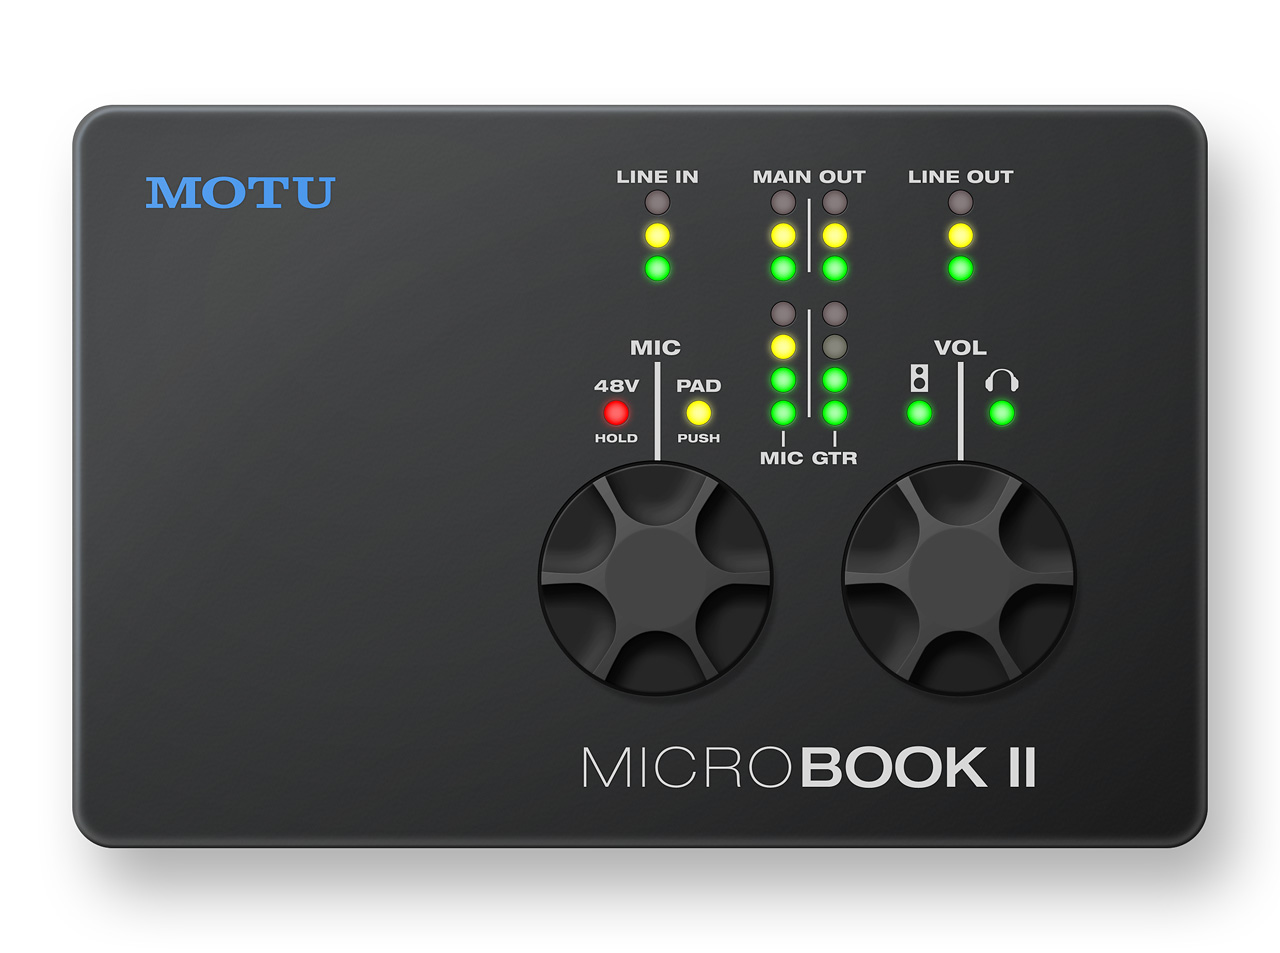 MOTU MicroBook IIc